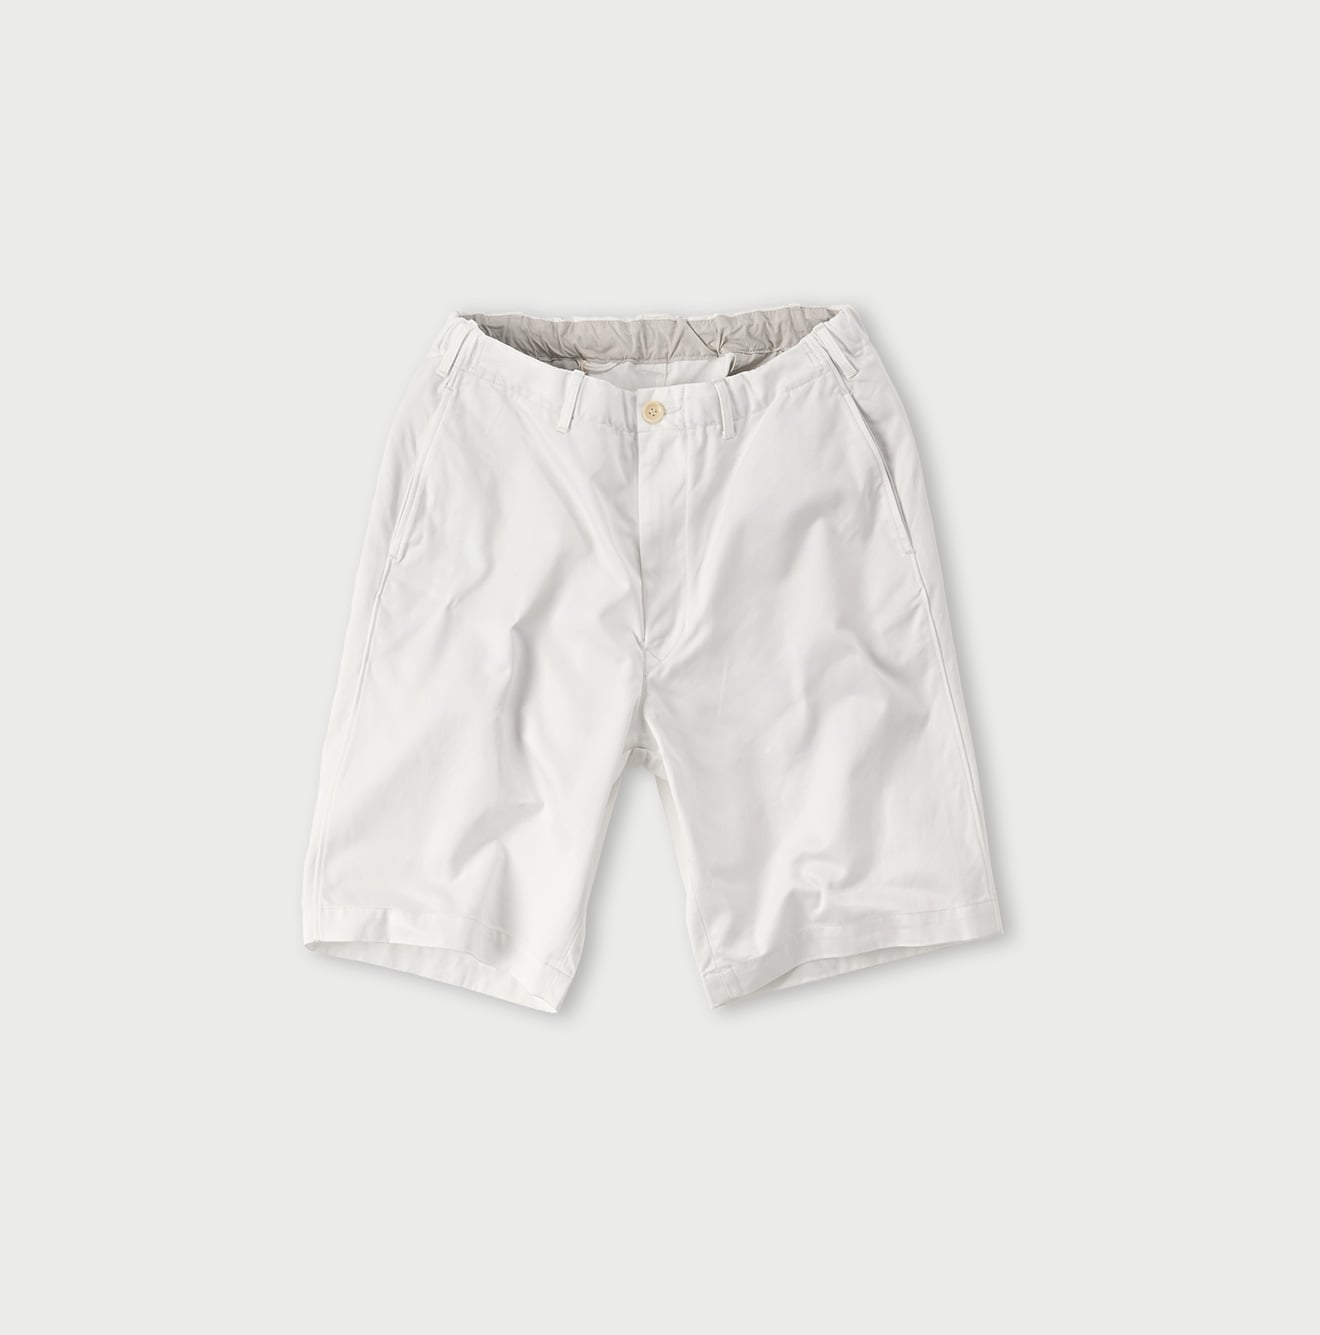 Chino 908 Poppo Short Pants